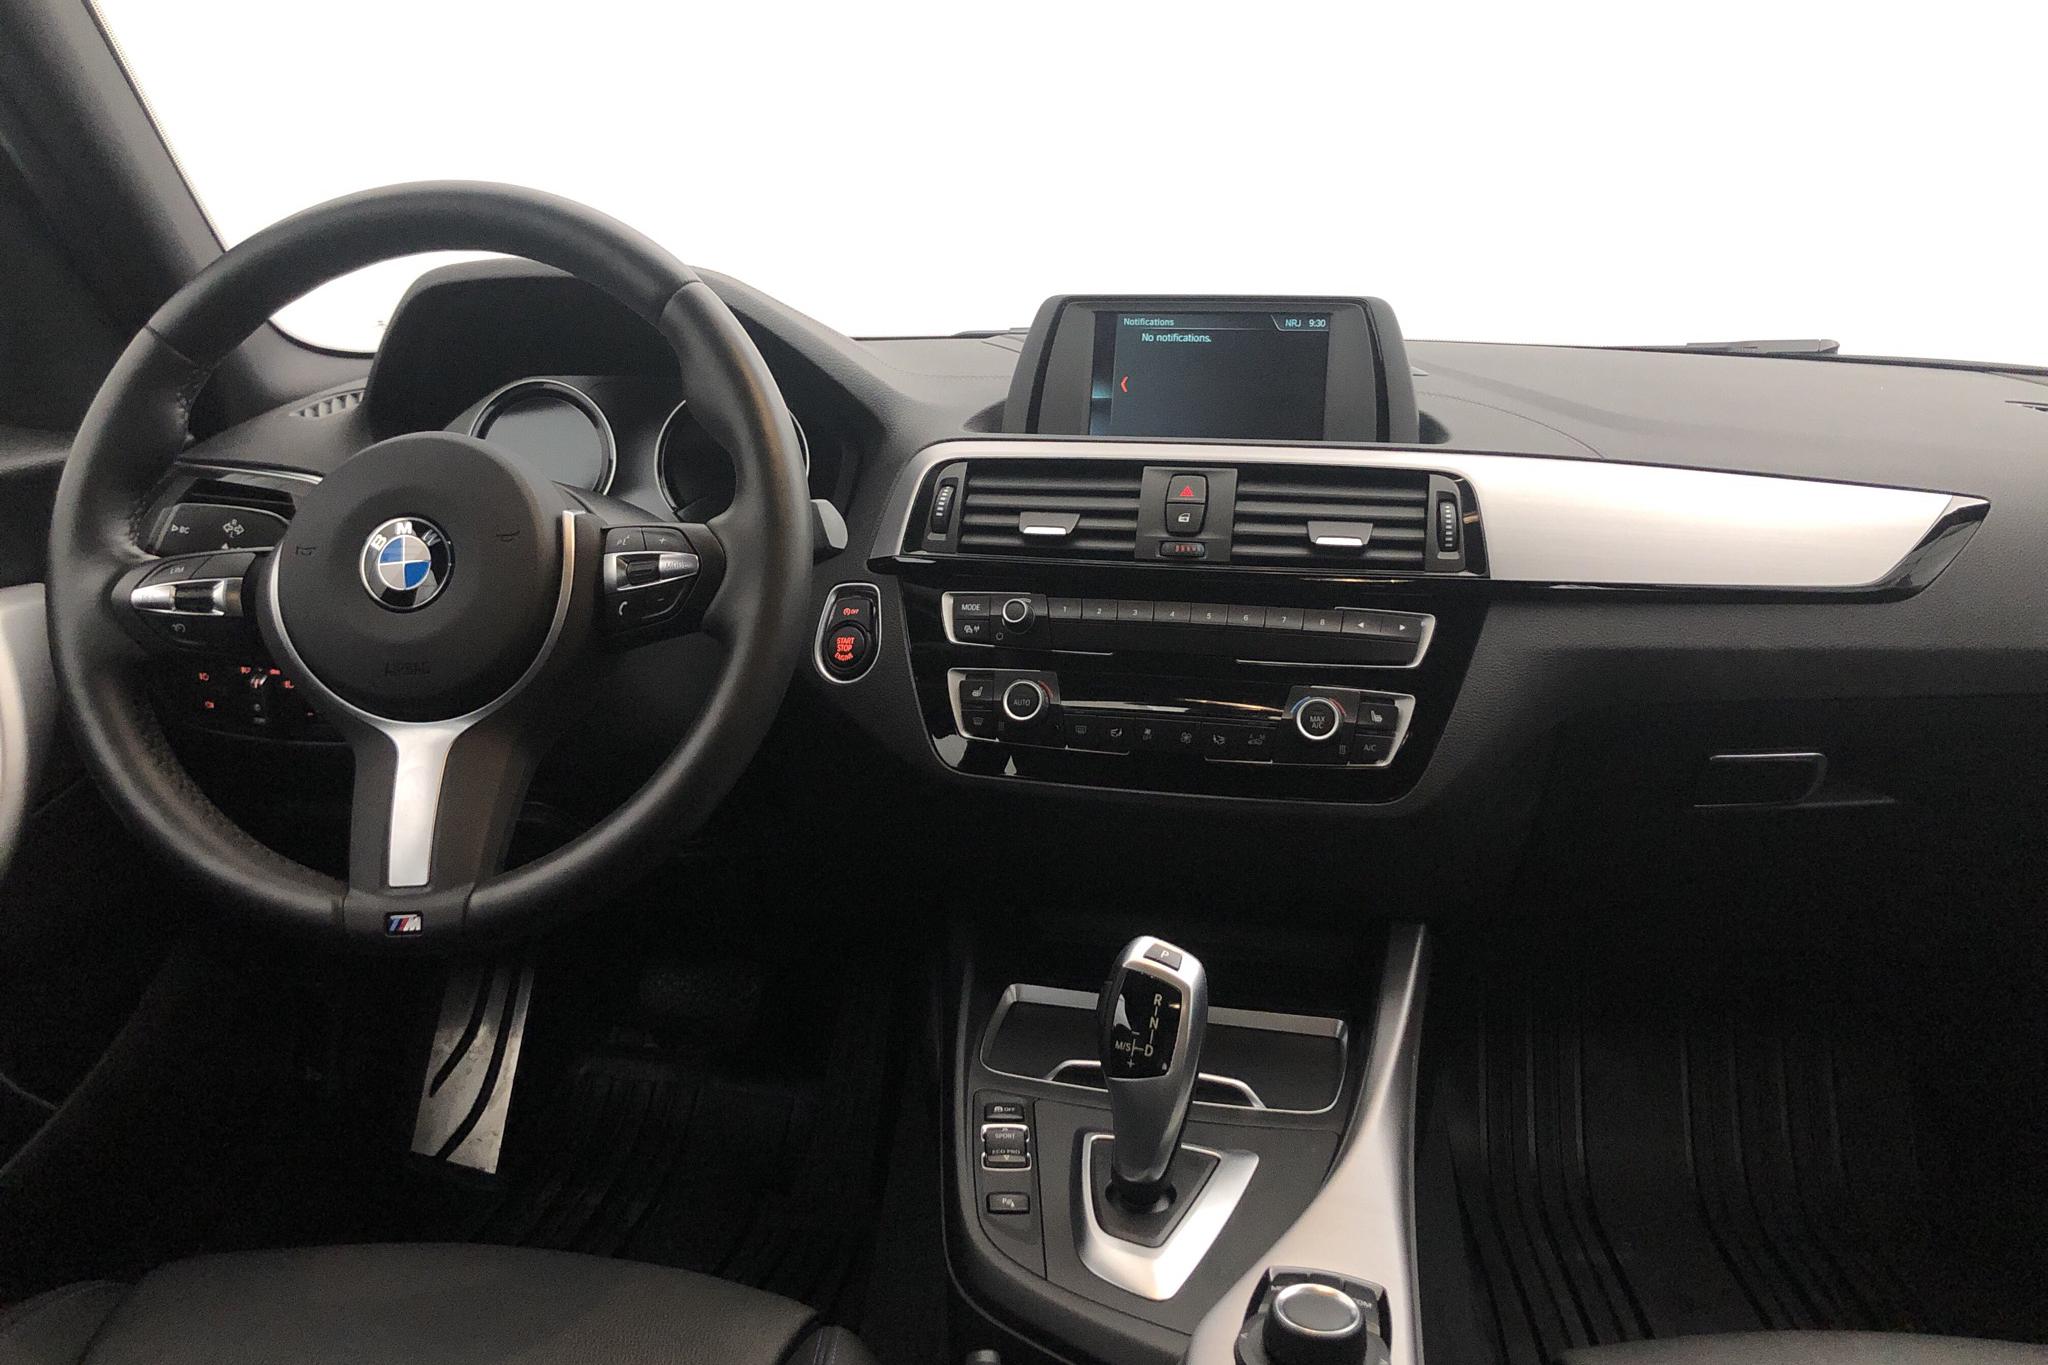 BMW 118i 5dr, F20 (136hk) - 2 194 mil - Automat - svart - 2019